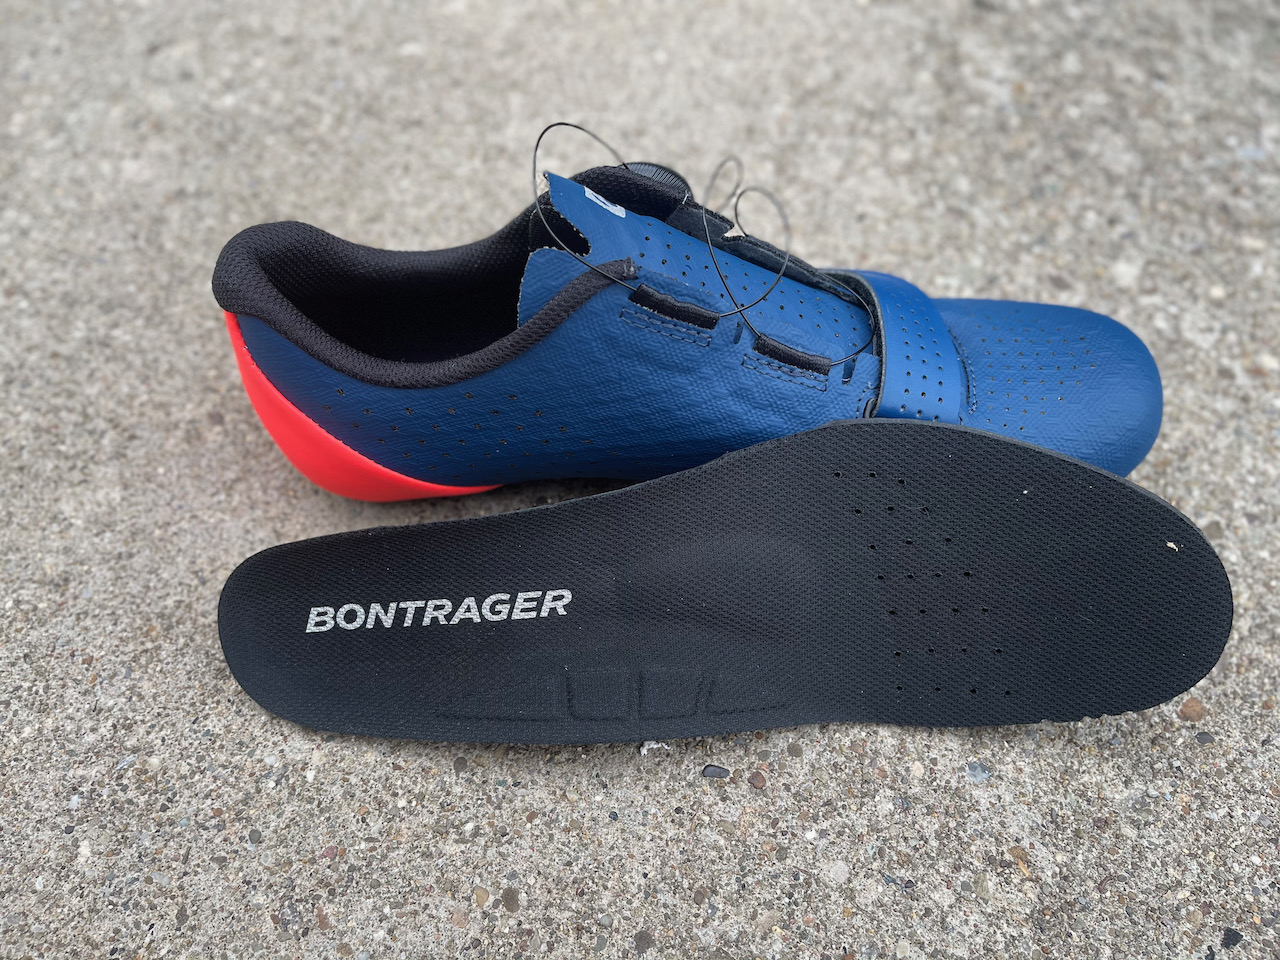 Bontrager Circuit shoe insole